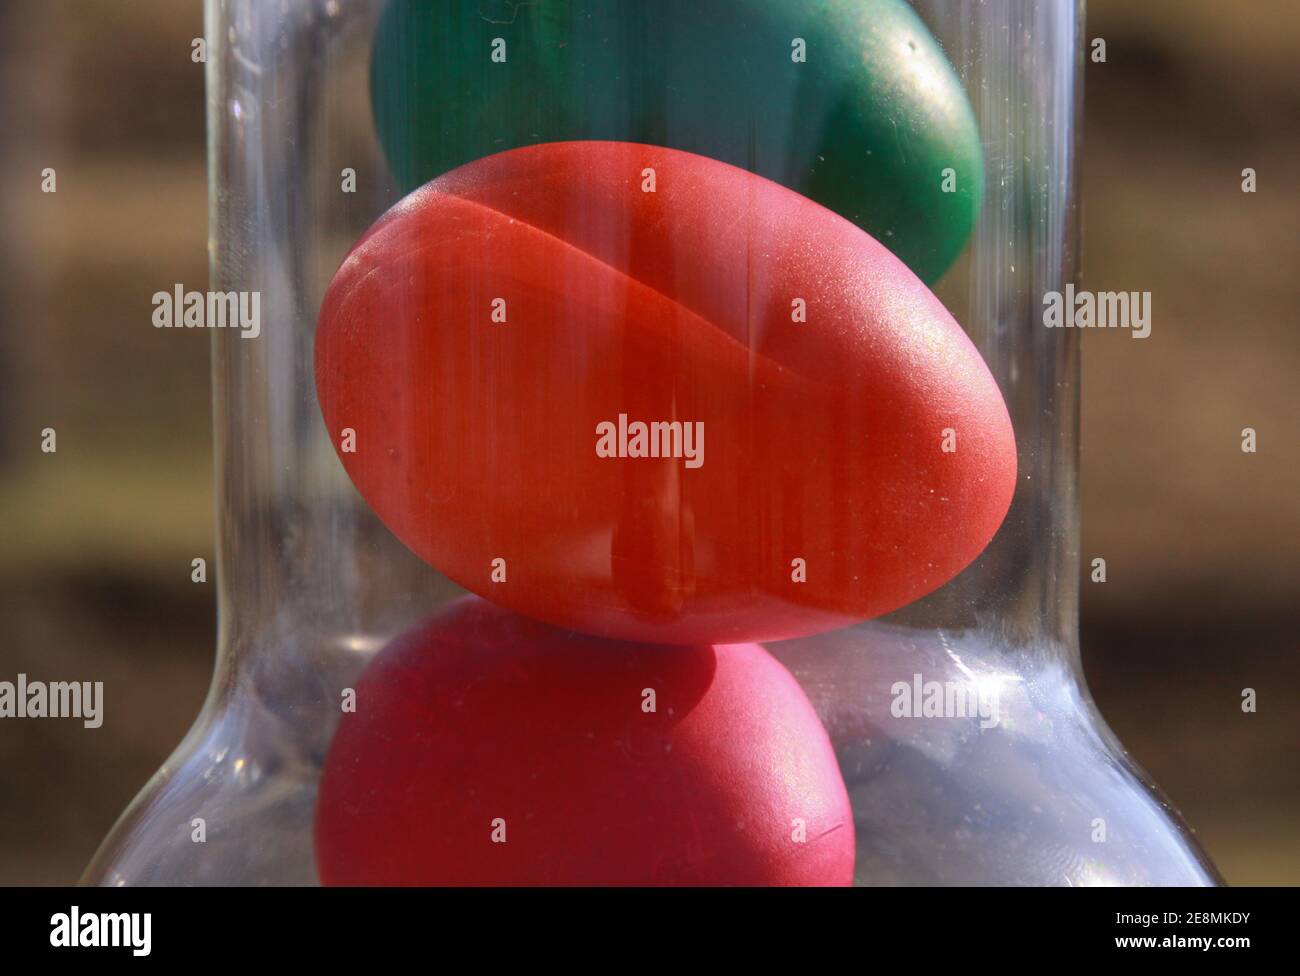 Huevos de Pascua pintados de color en jarrón de vidrio o en la jarra en preparación para las vacaciones. Pintar huevos de pollo o pato es una tradición cristiana para celebrar EA Foto de stock